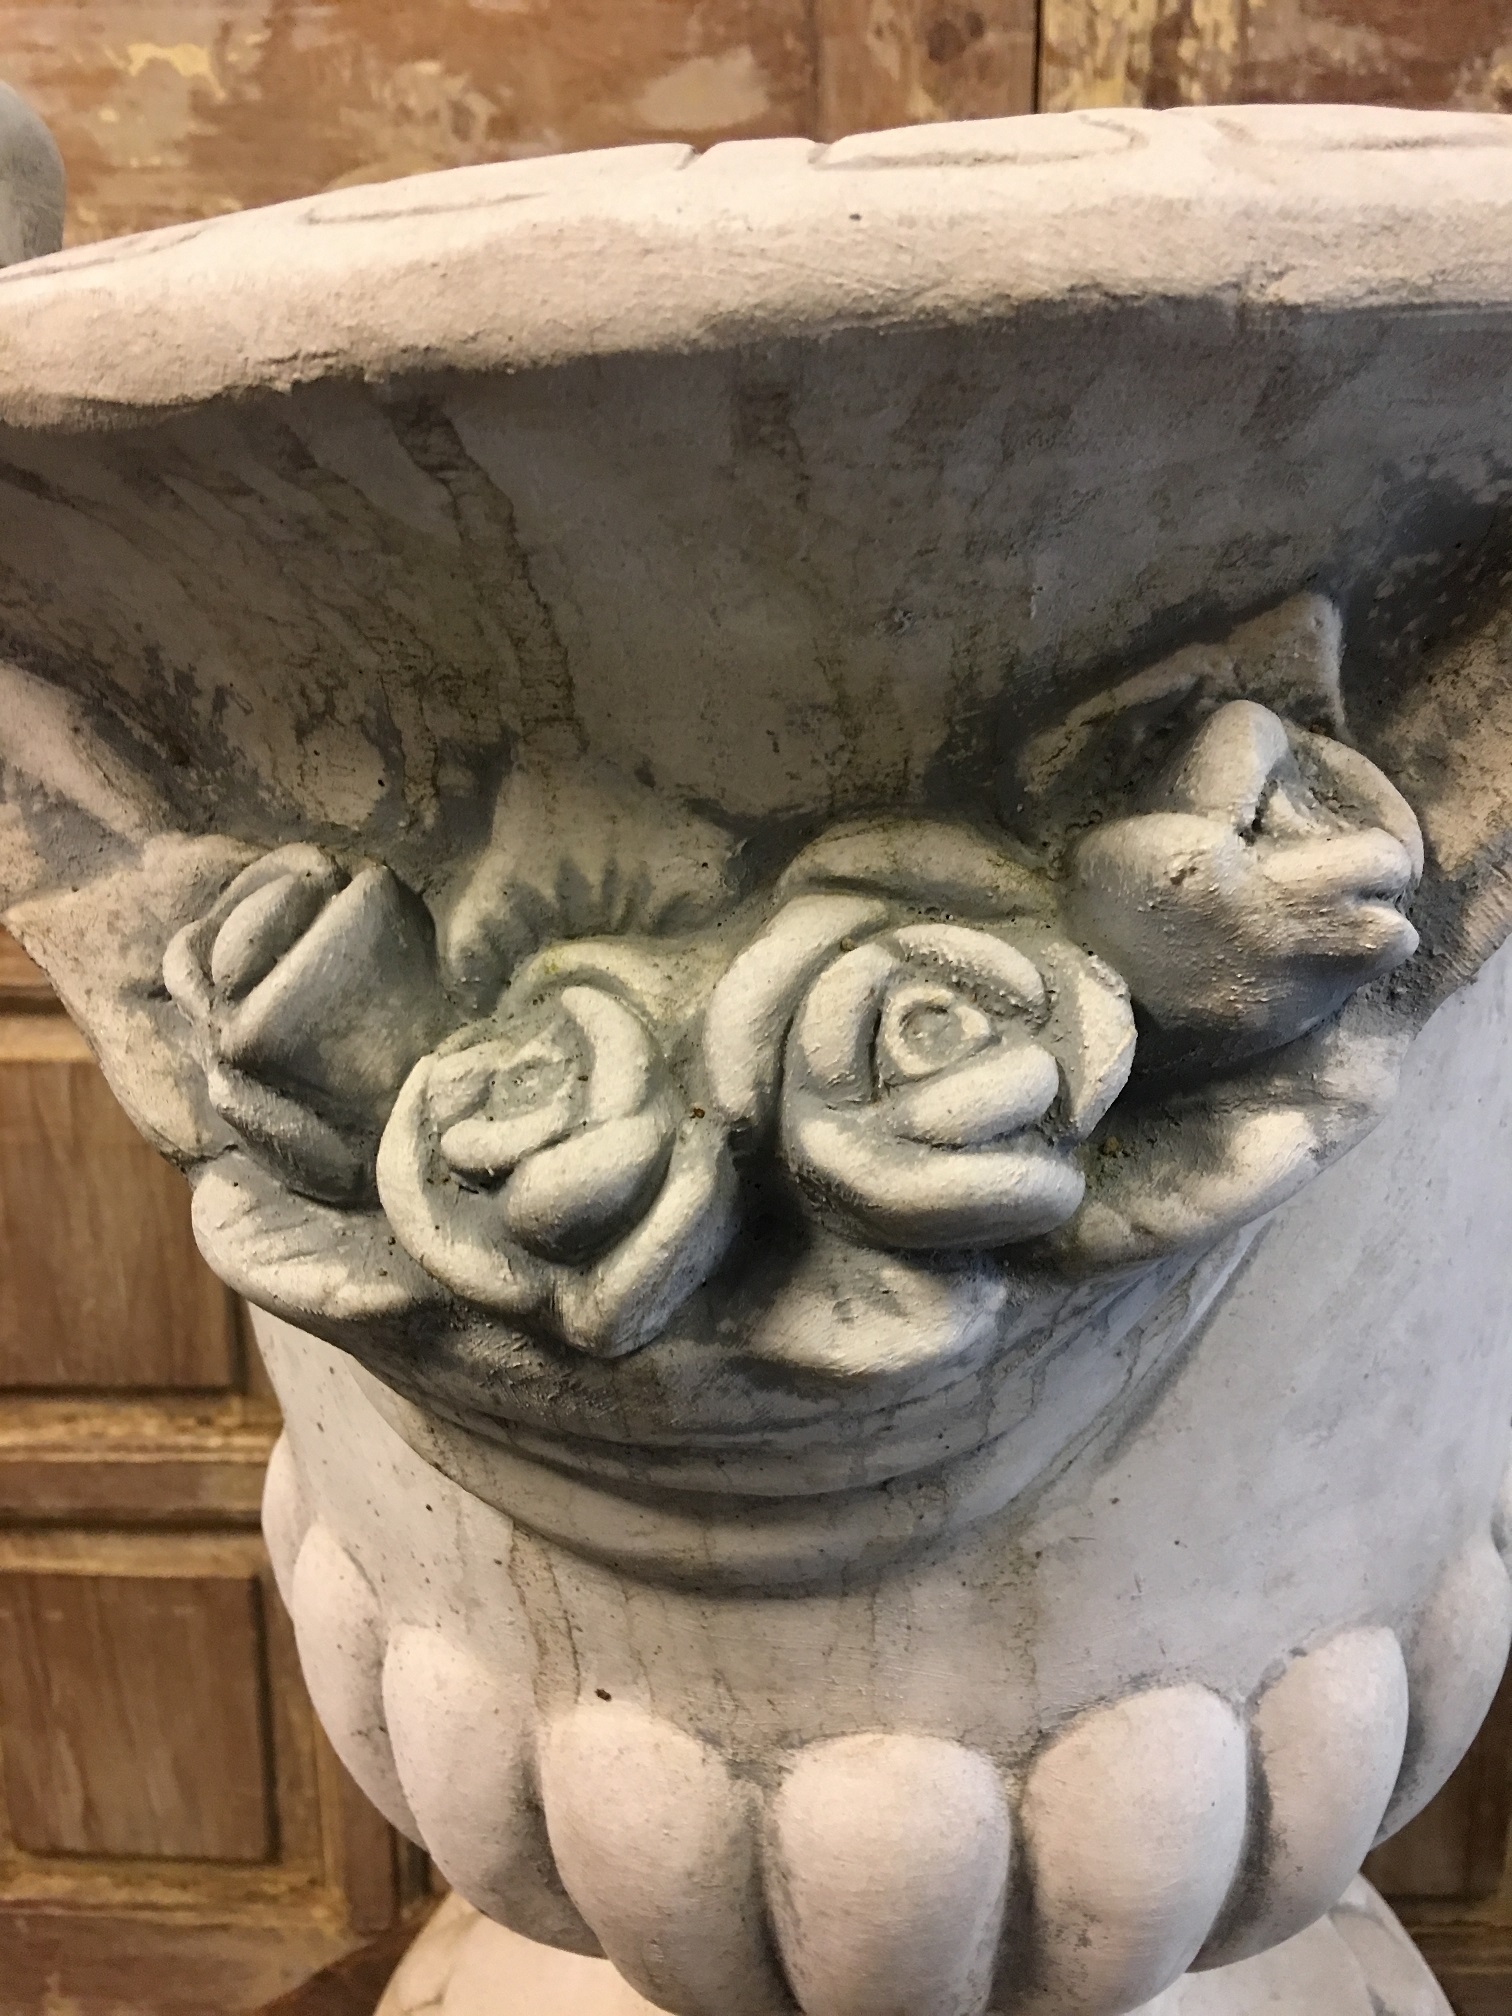 Blumentopf aus Stein, Rosenmotiv, verzierte Gartenvase